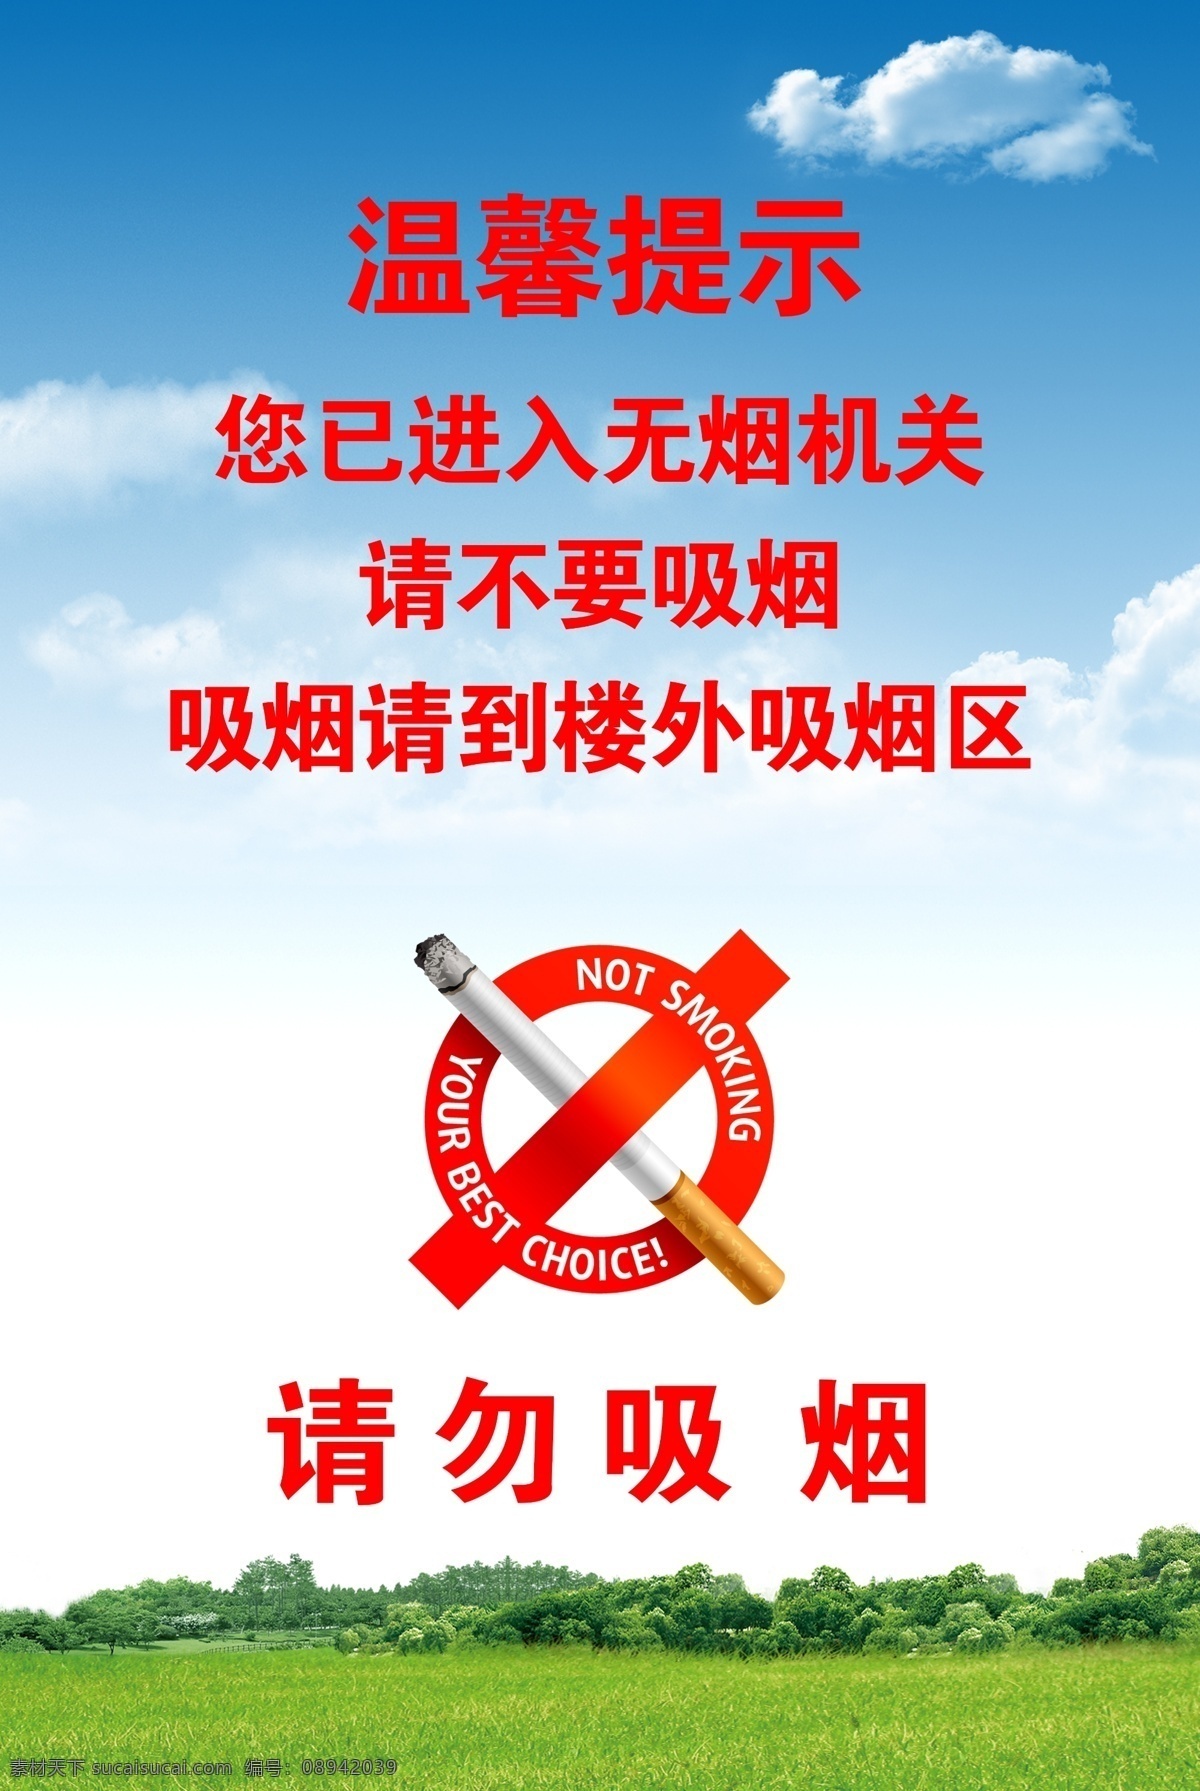 禁止吸烟 请勿吸烟 无烟单位 吸烟处 吸烟处展板 温馨提示